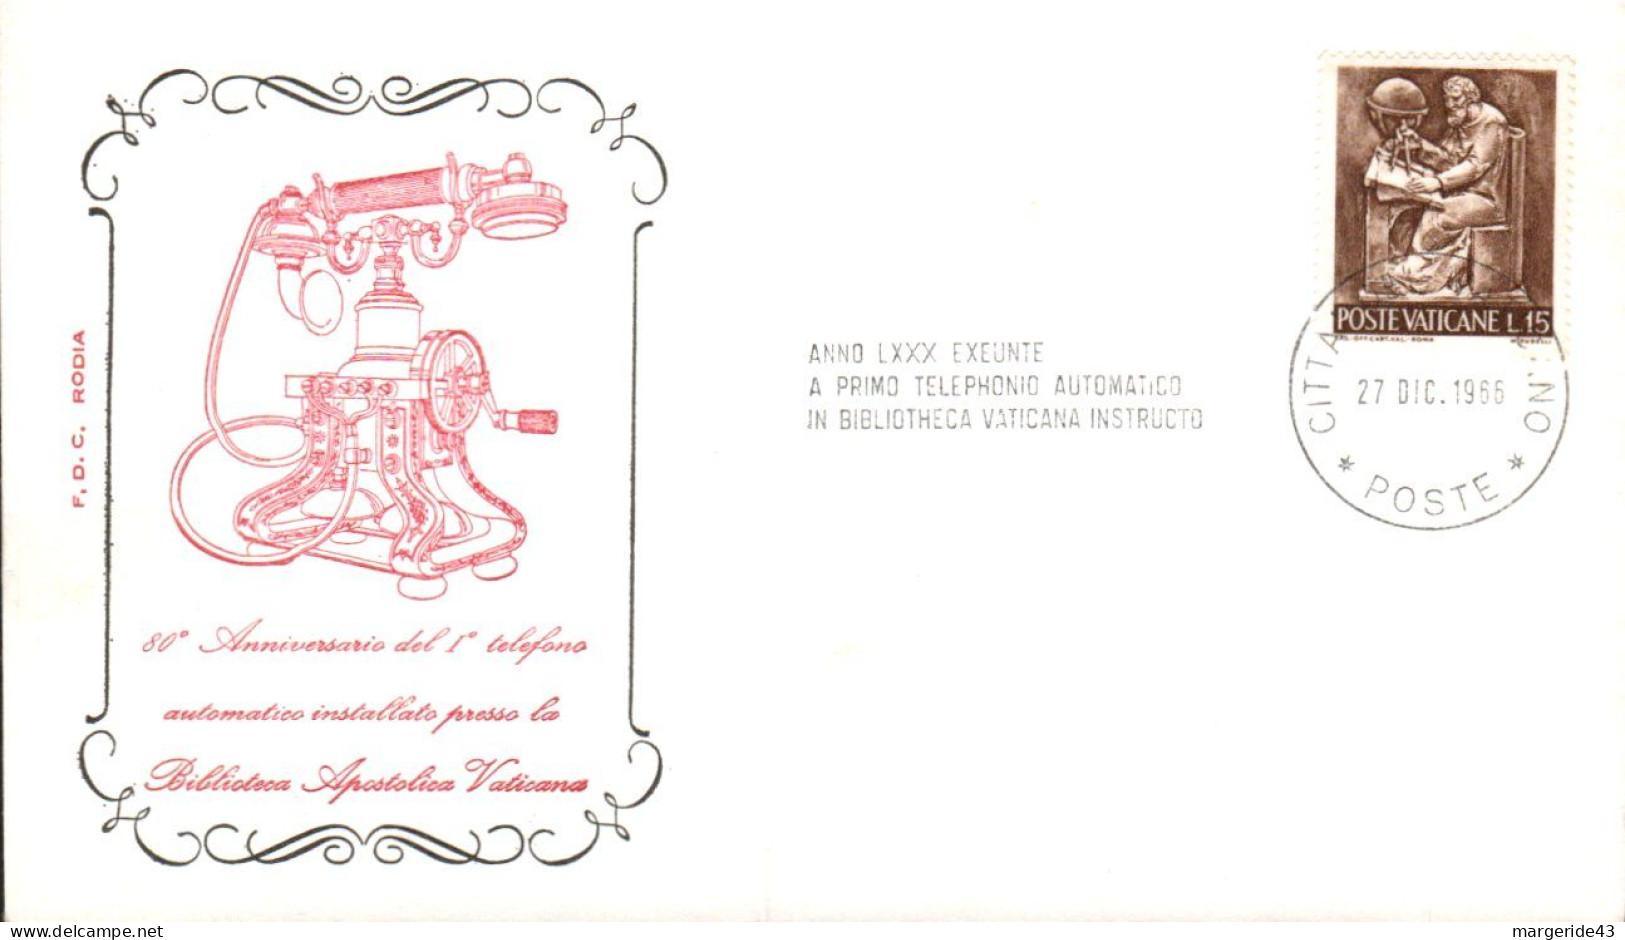 VATICAN 1966 PREMIER TELEPHONE AUTOMATIQUE A LA BIBLIOTHEQUE APOSTOLIQUE - Télécom